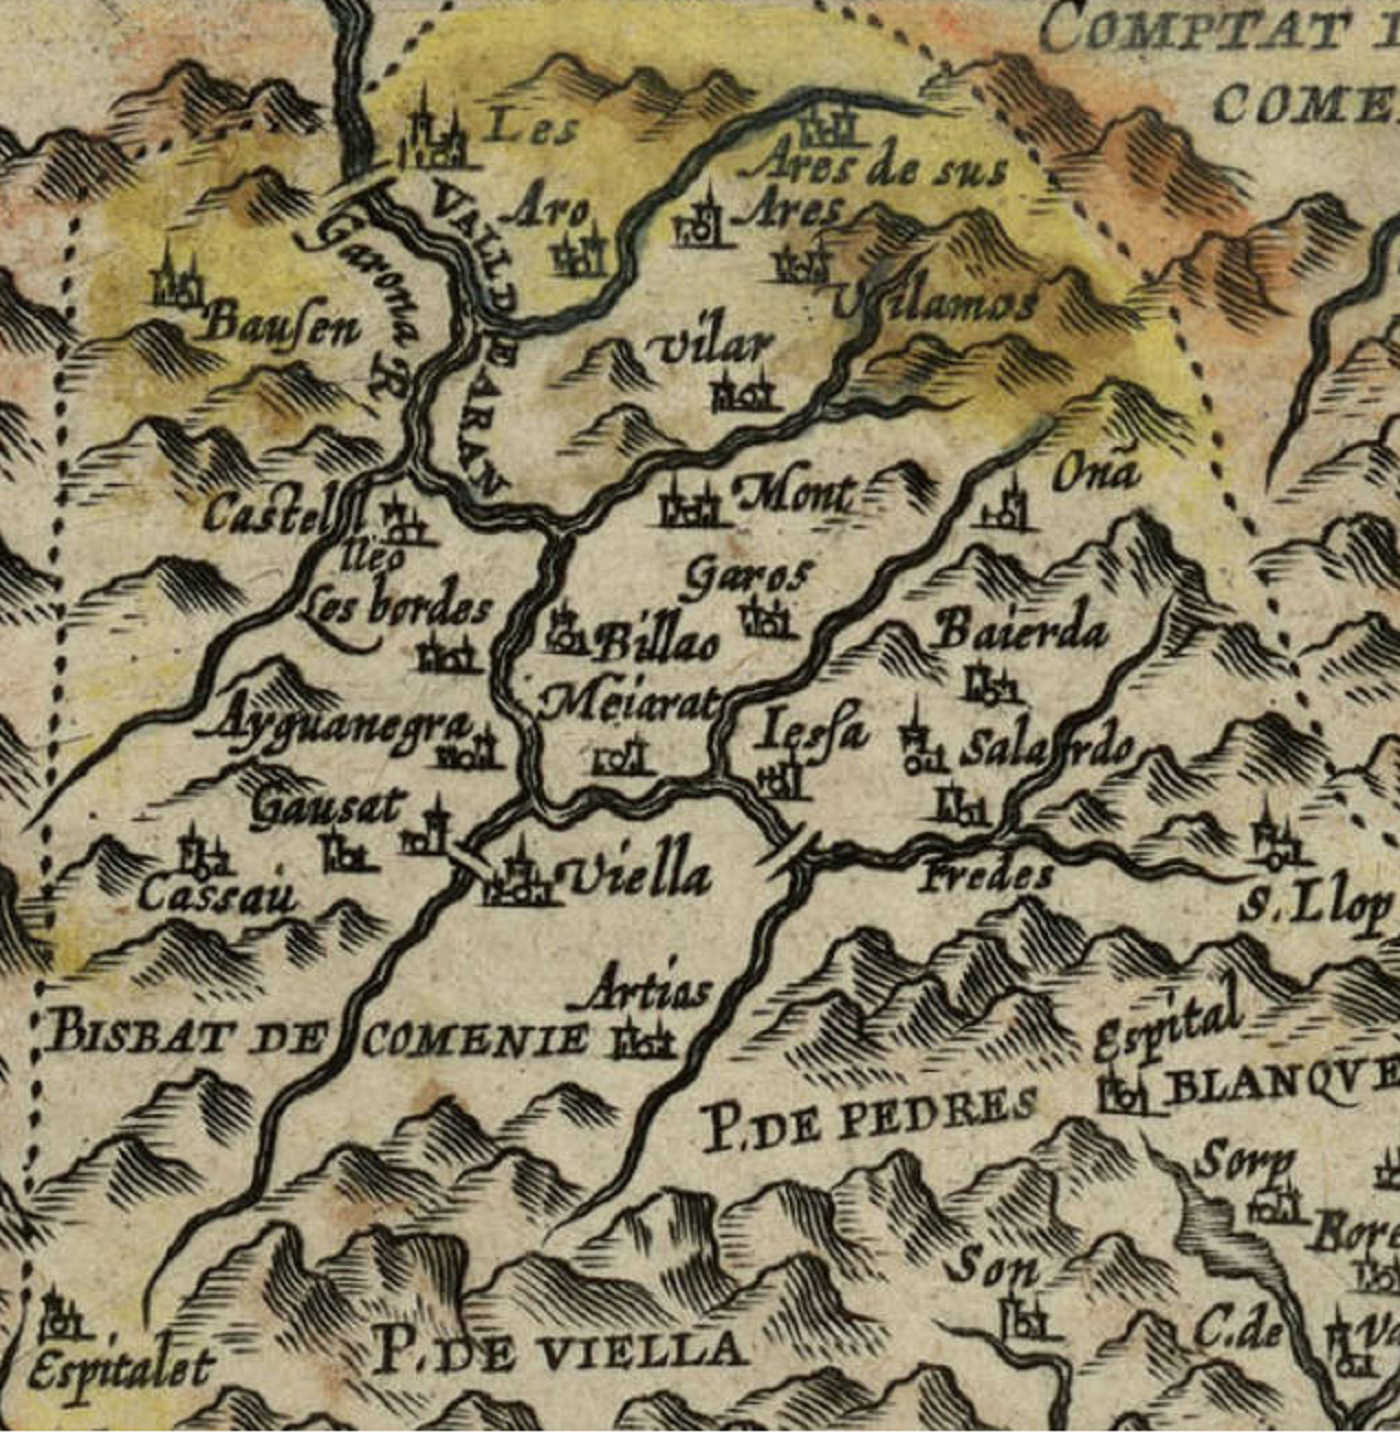 El ejército de Felipe IV masacra la Vall d'Aran